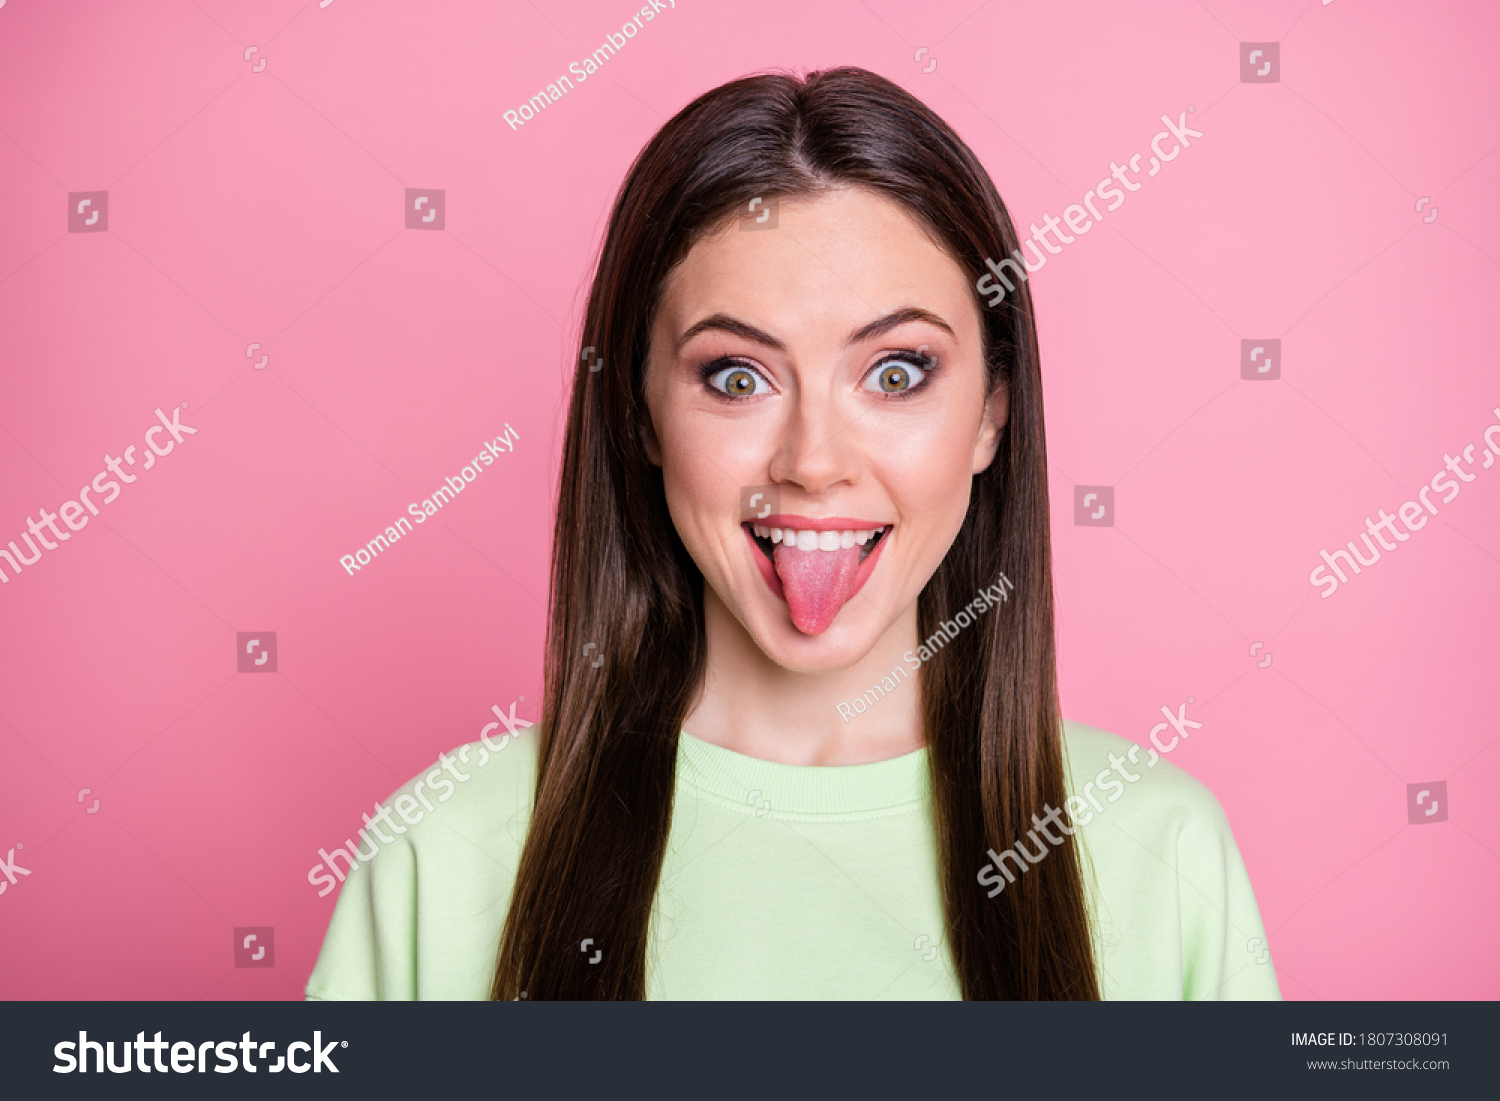 26524 Imágenes De Women Sticking Tongue Out Imágenes Fotos Y Vectores De Stock Shutterstock 1237